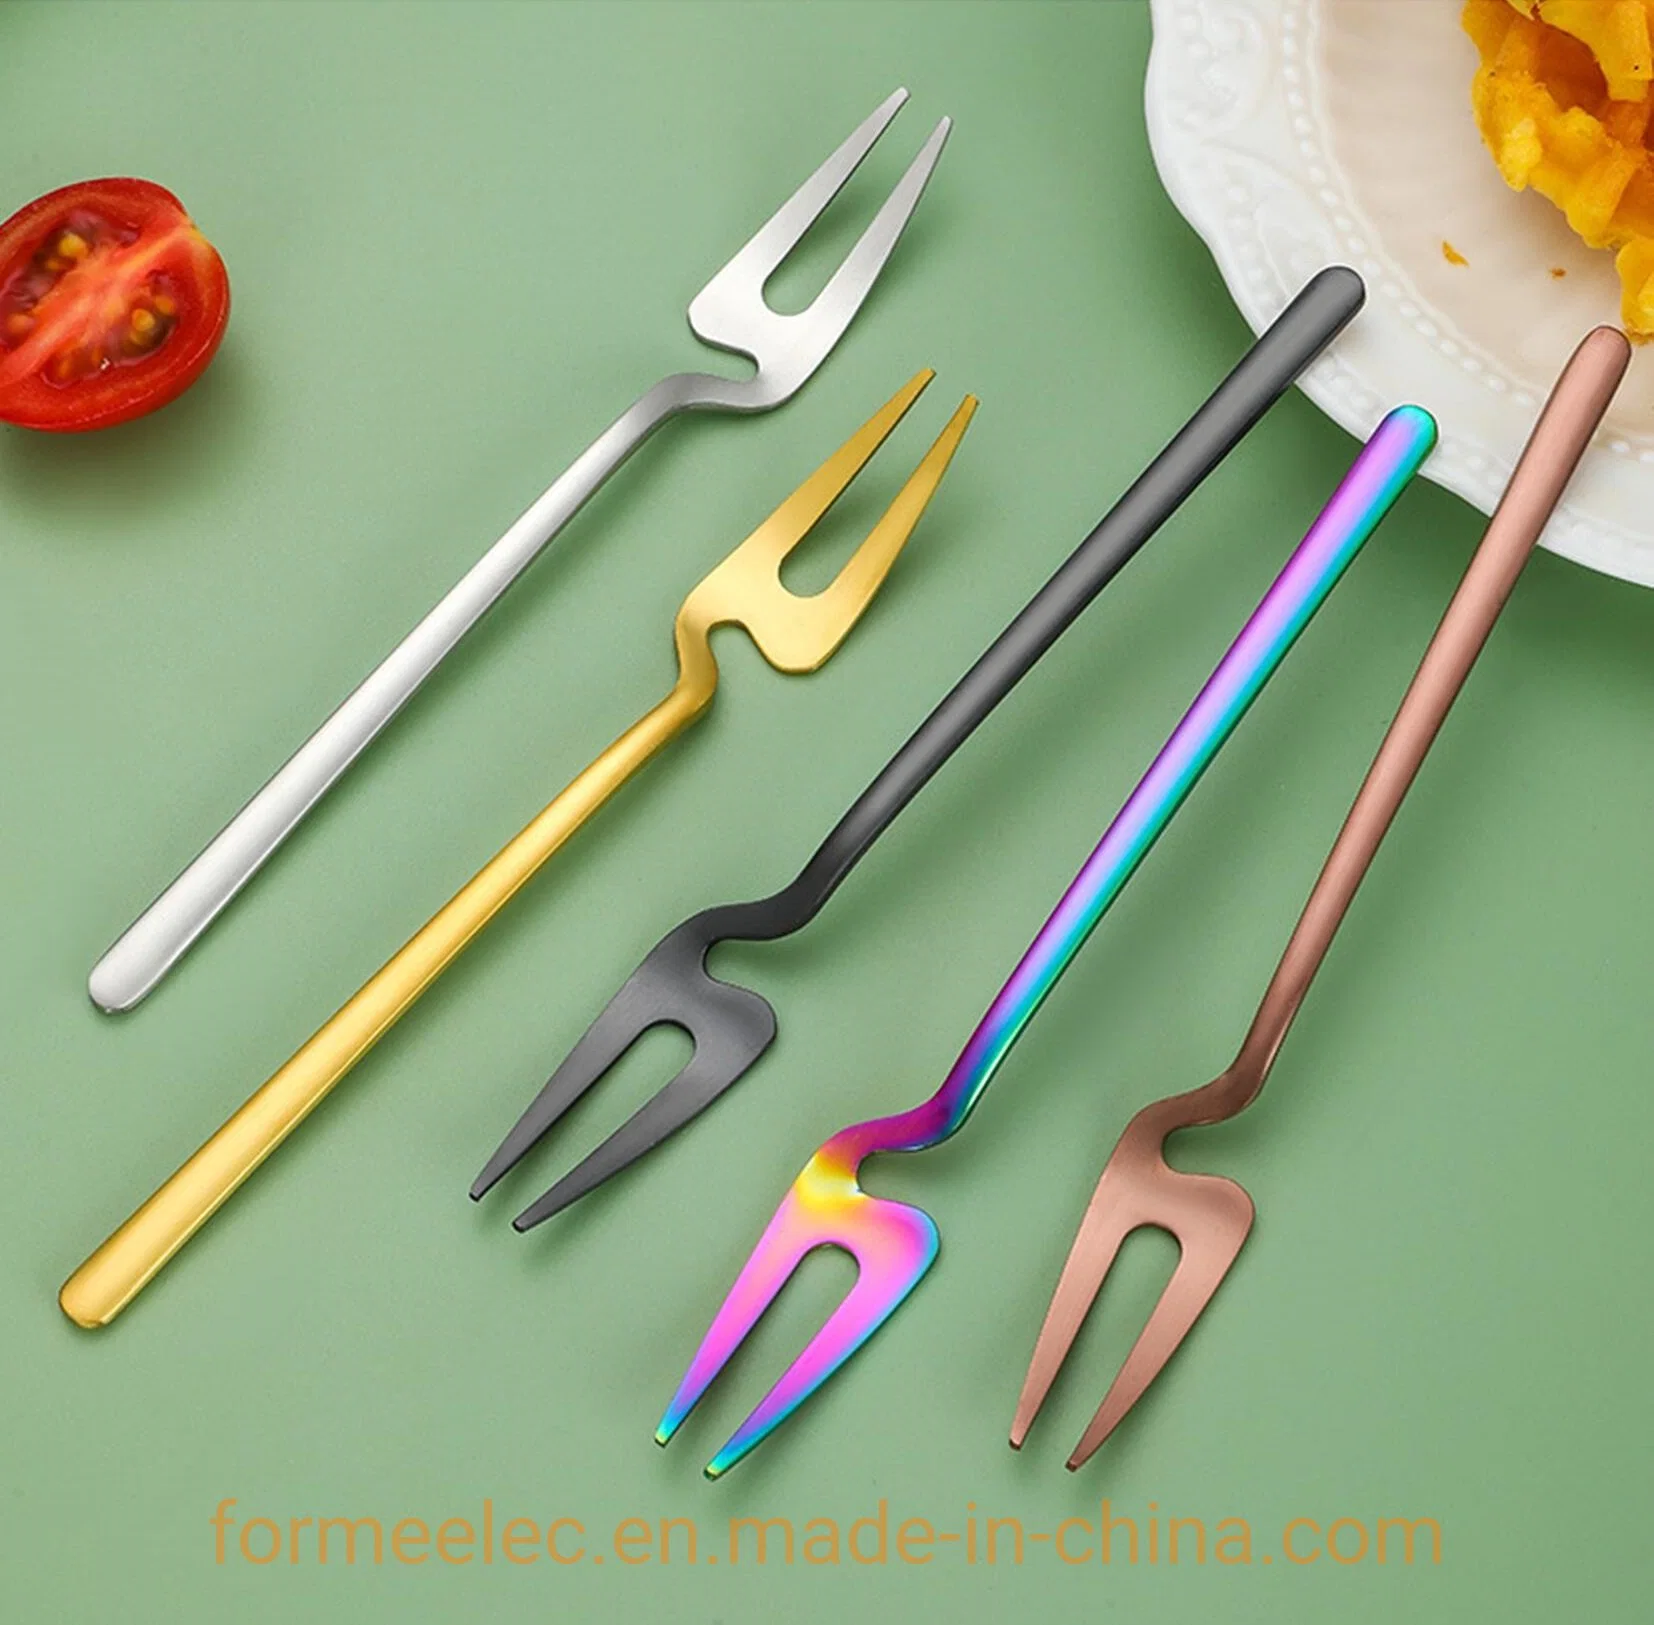 Copo Edge Bowl tipo afixação de imagens tipo garfo com faca para sobremesas colher Conjunto de café de chá Cutlery Set